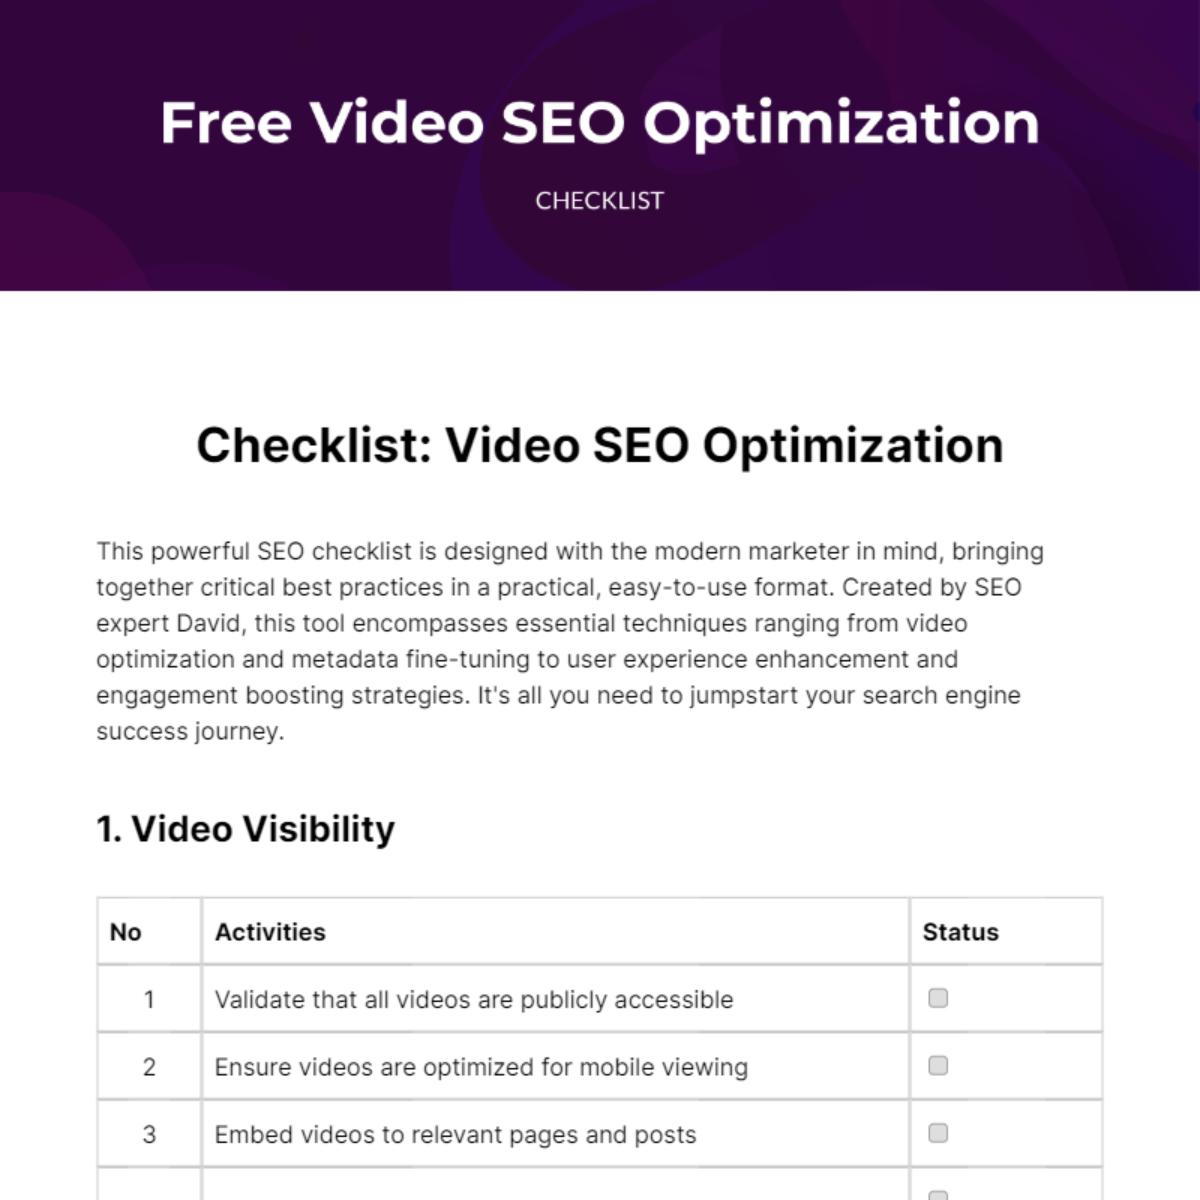 Video SEO Optimization Checklist Template